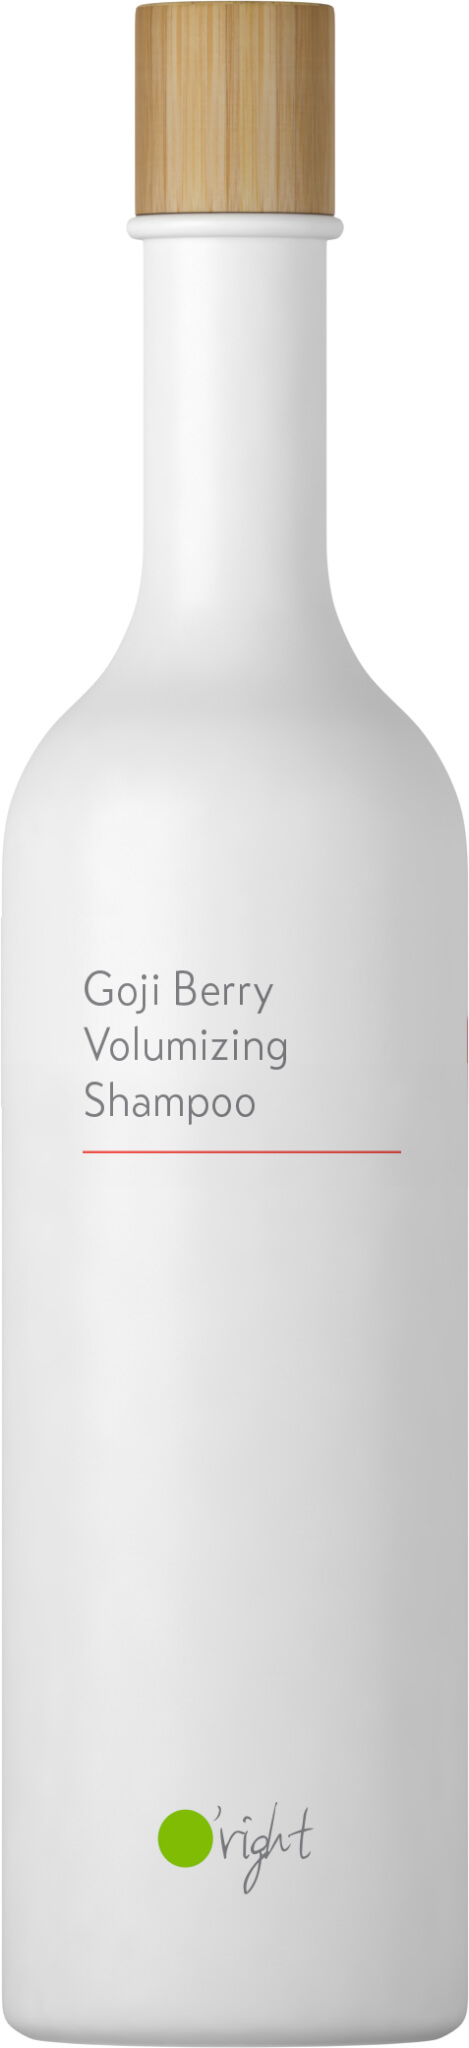 Goji Berry Volumizing Shampoo 400ml 2020